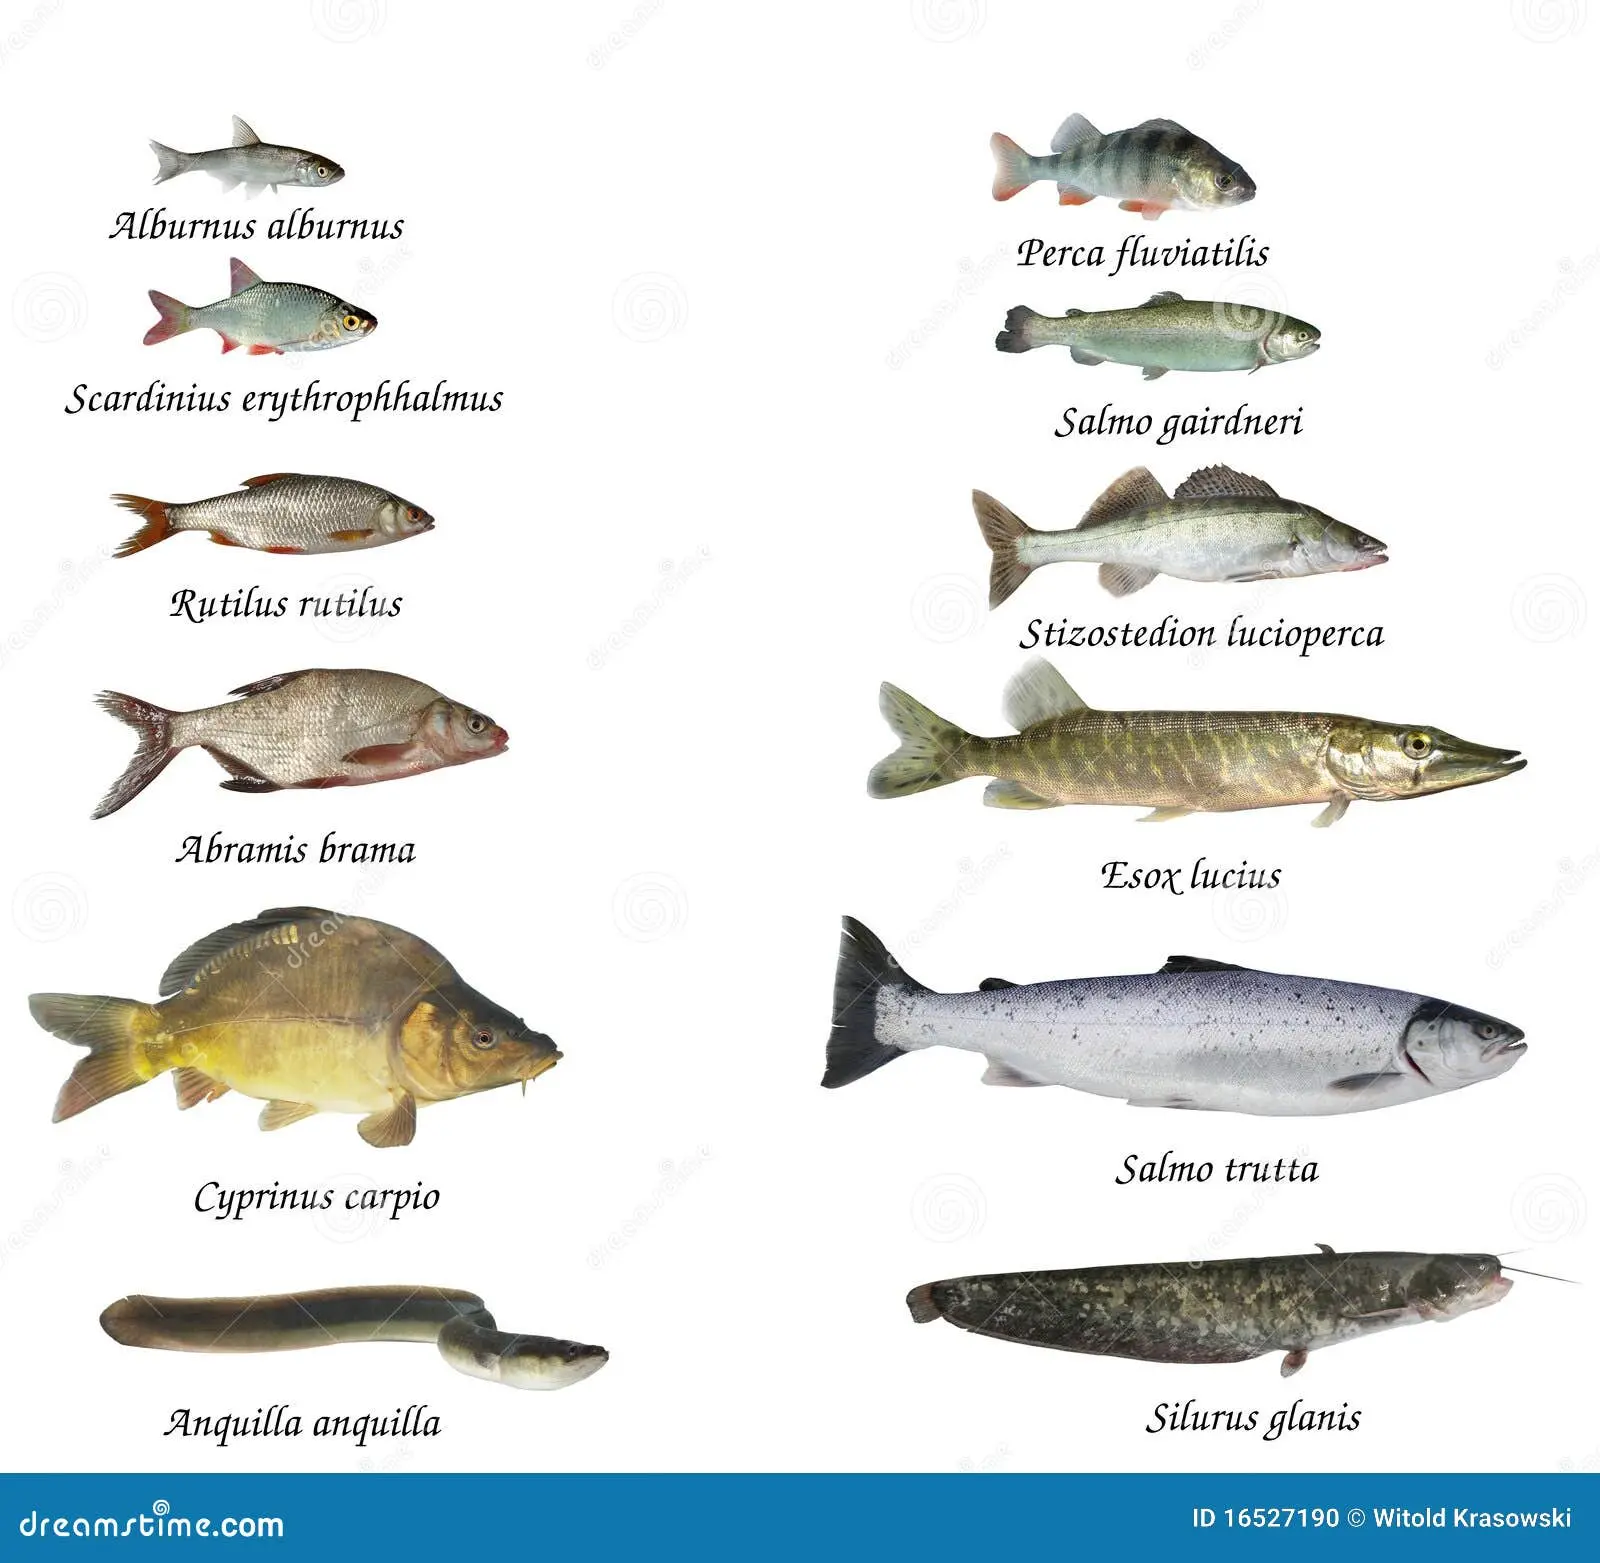 pescado de lago - Qué tipo de peces hay en un lago